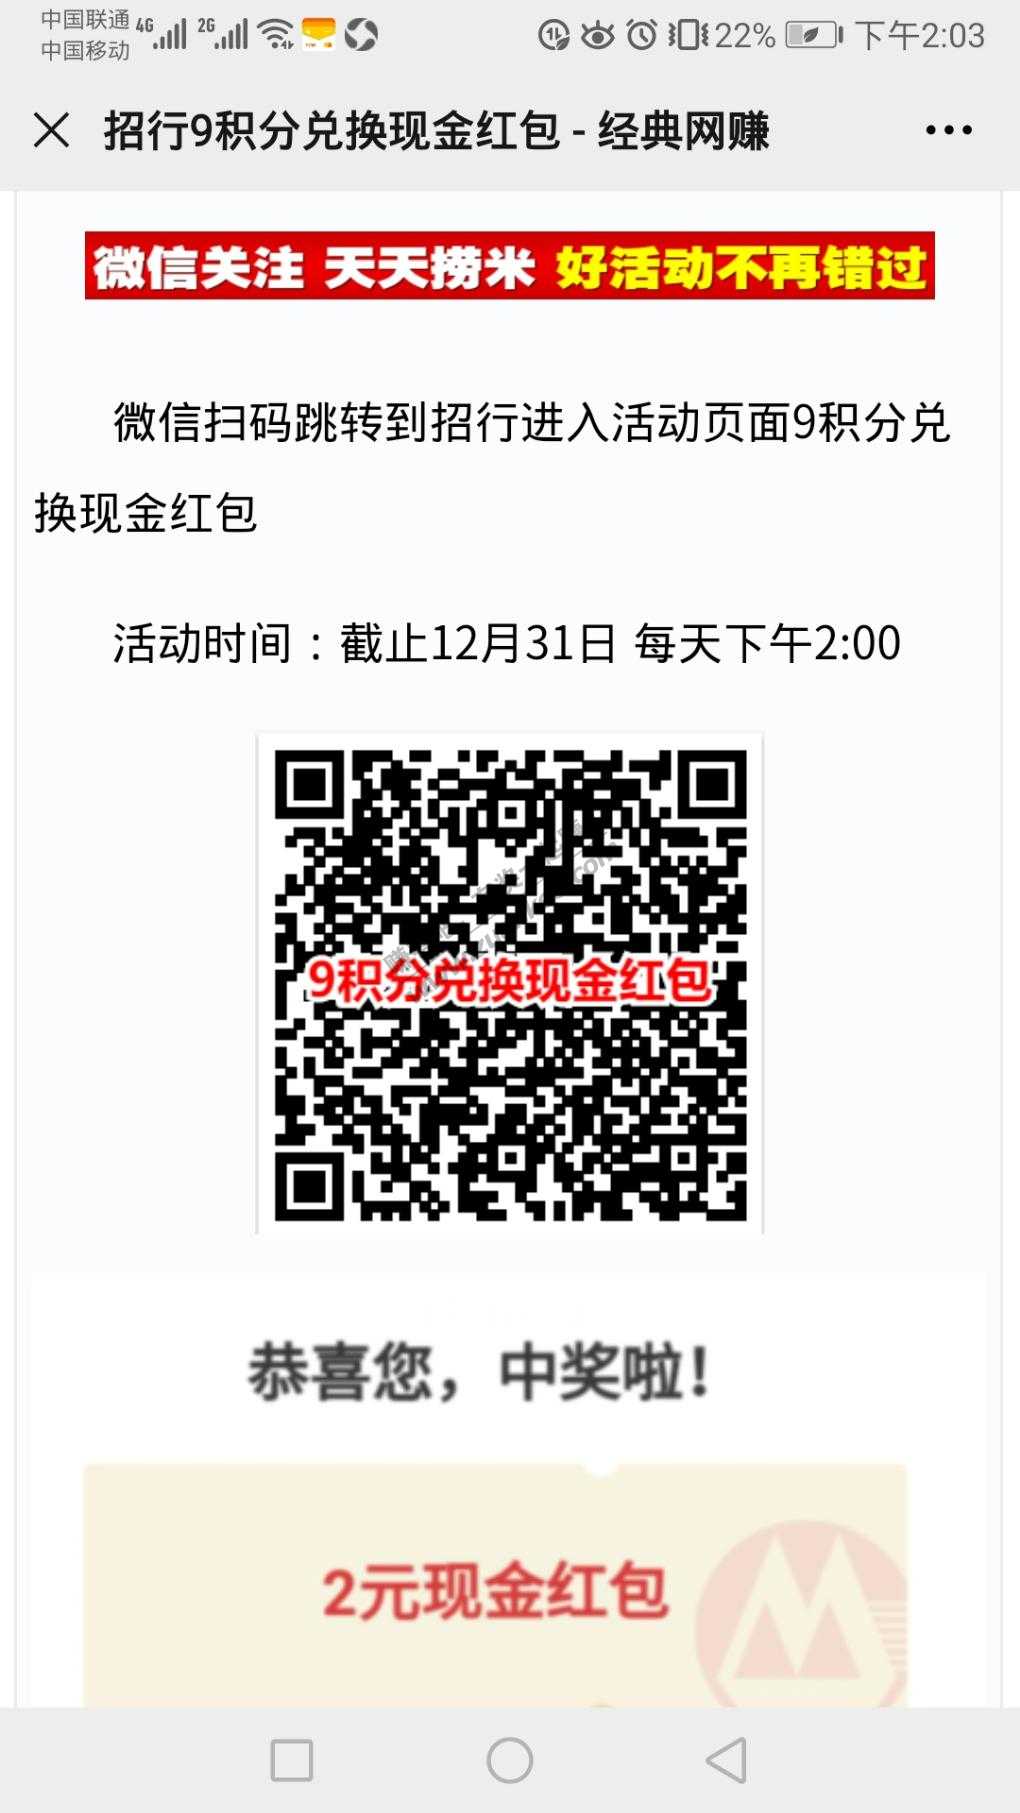 9积分兑换 2元-惠小助(52huixz.com)